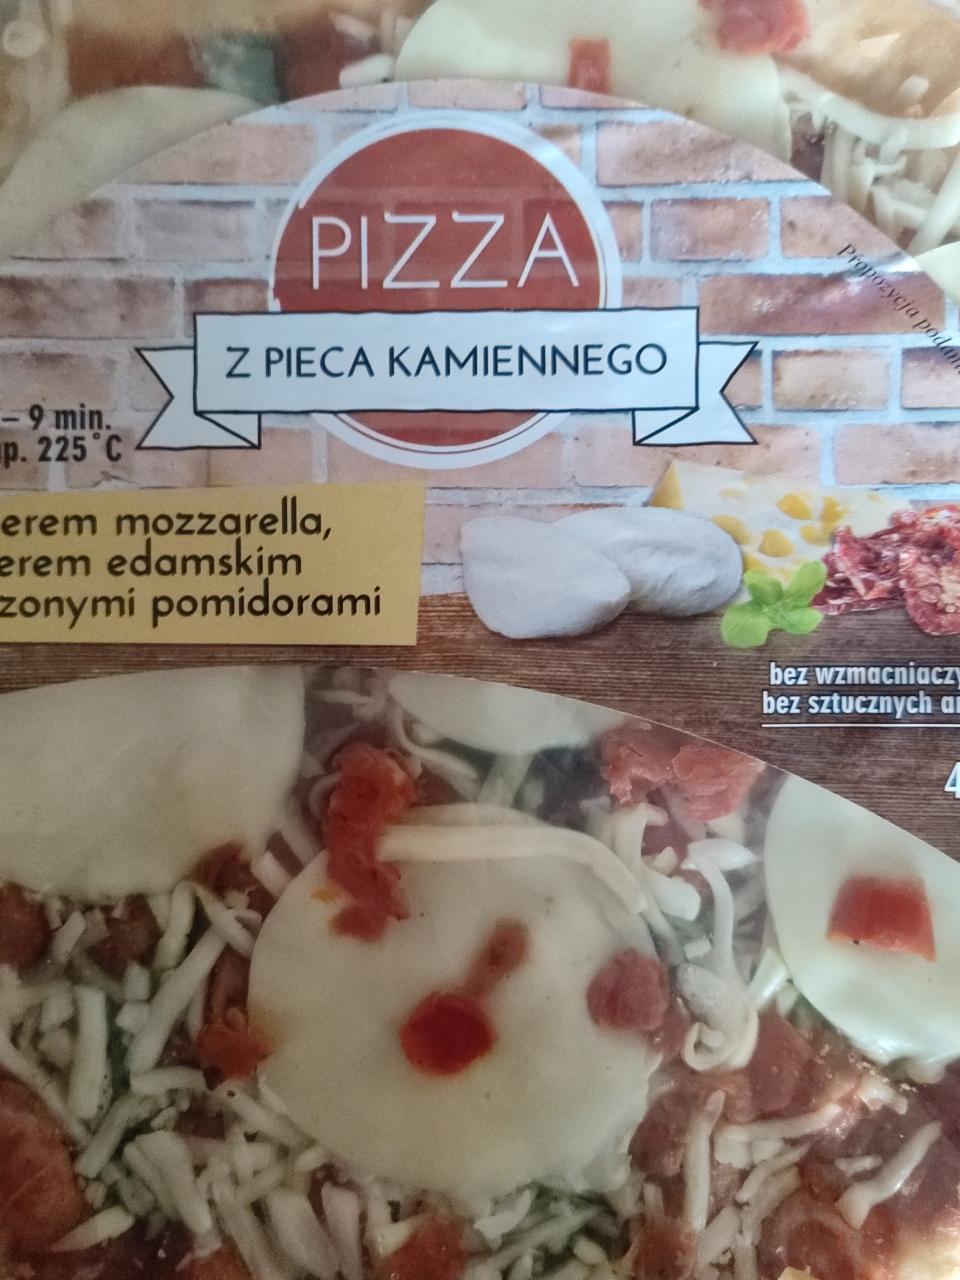 Zdjęcia - Pizza z serem mozzarella, edamskim i suszonymi pomidorami Pizza z pieca kamiennego